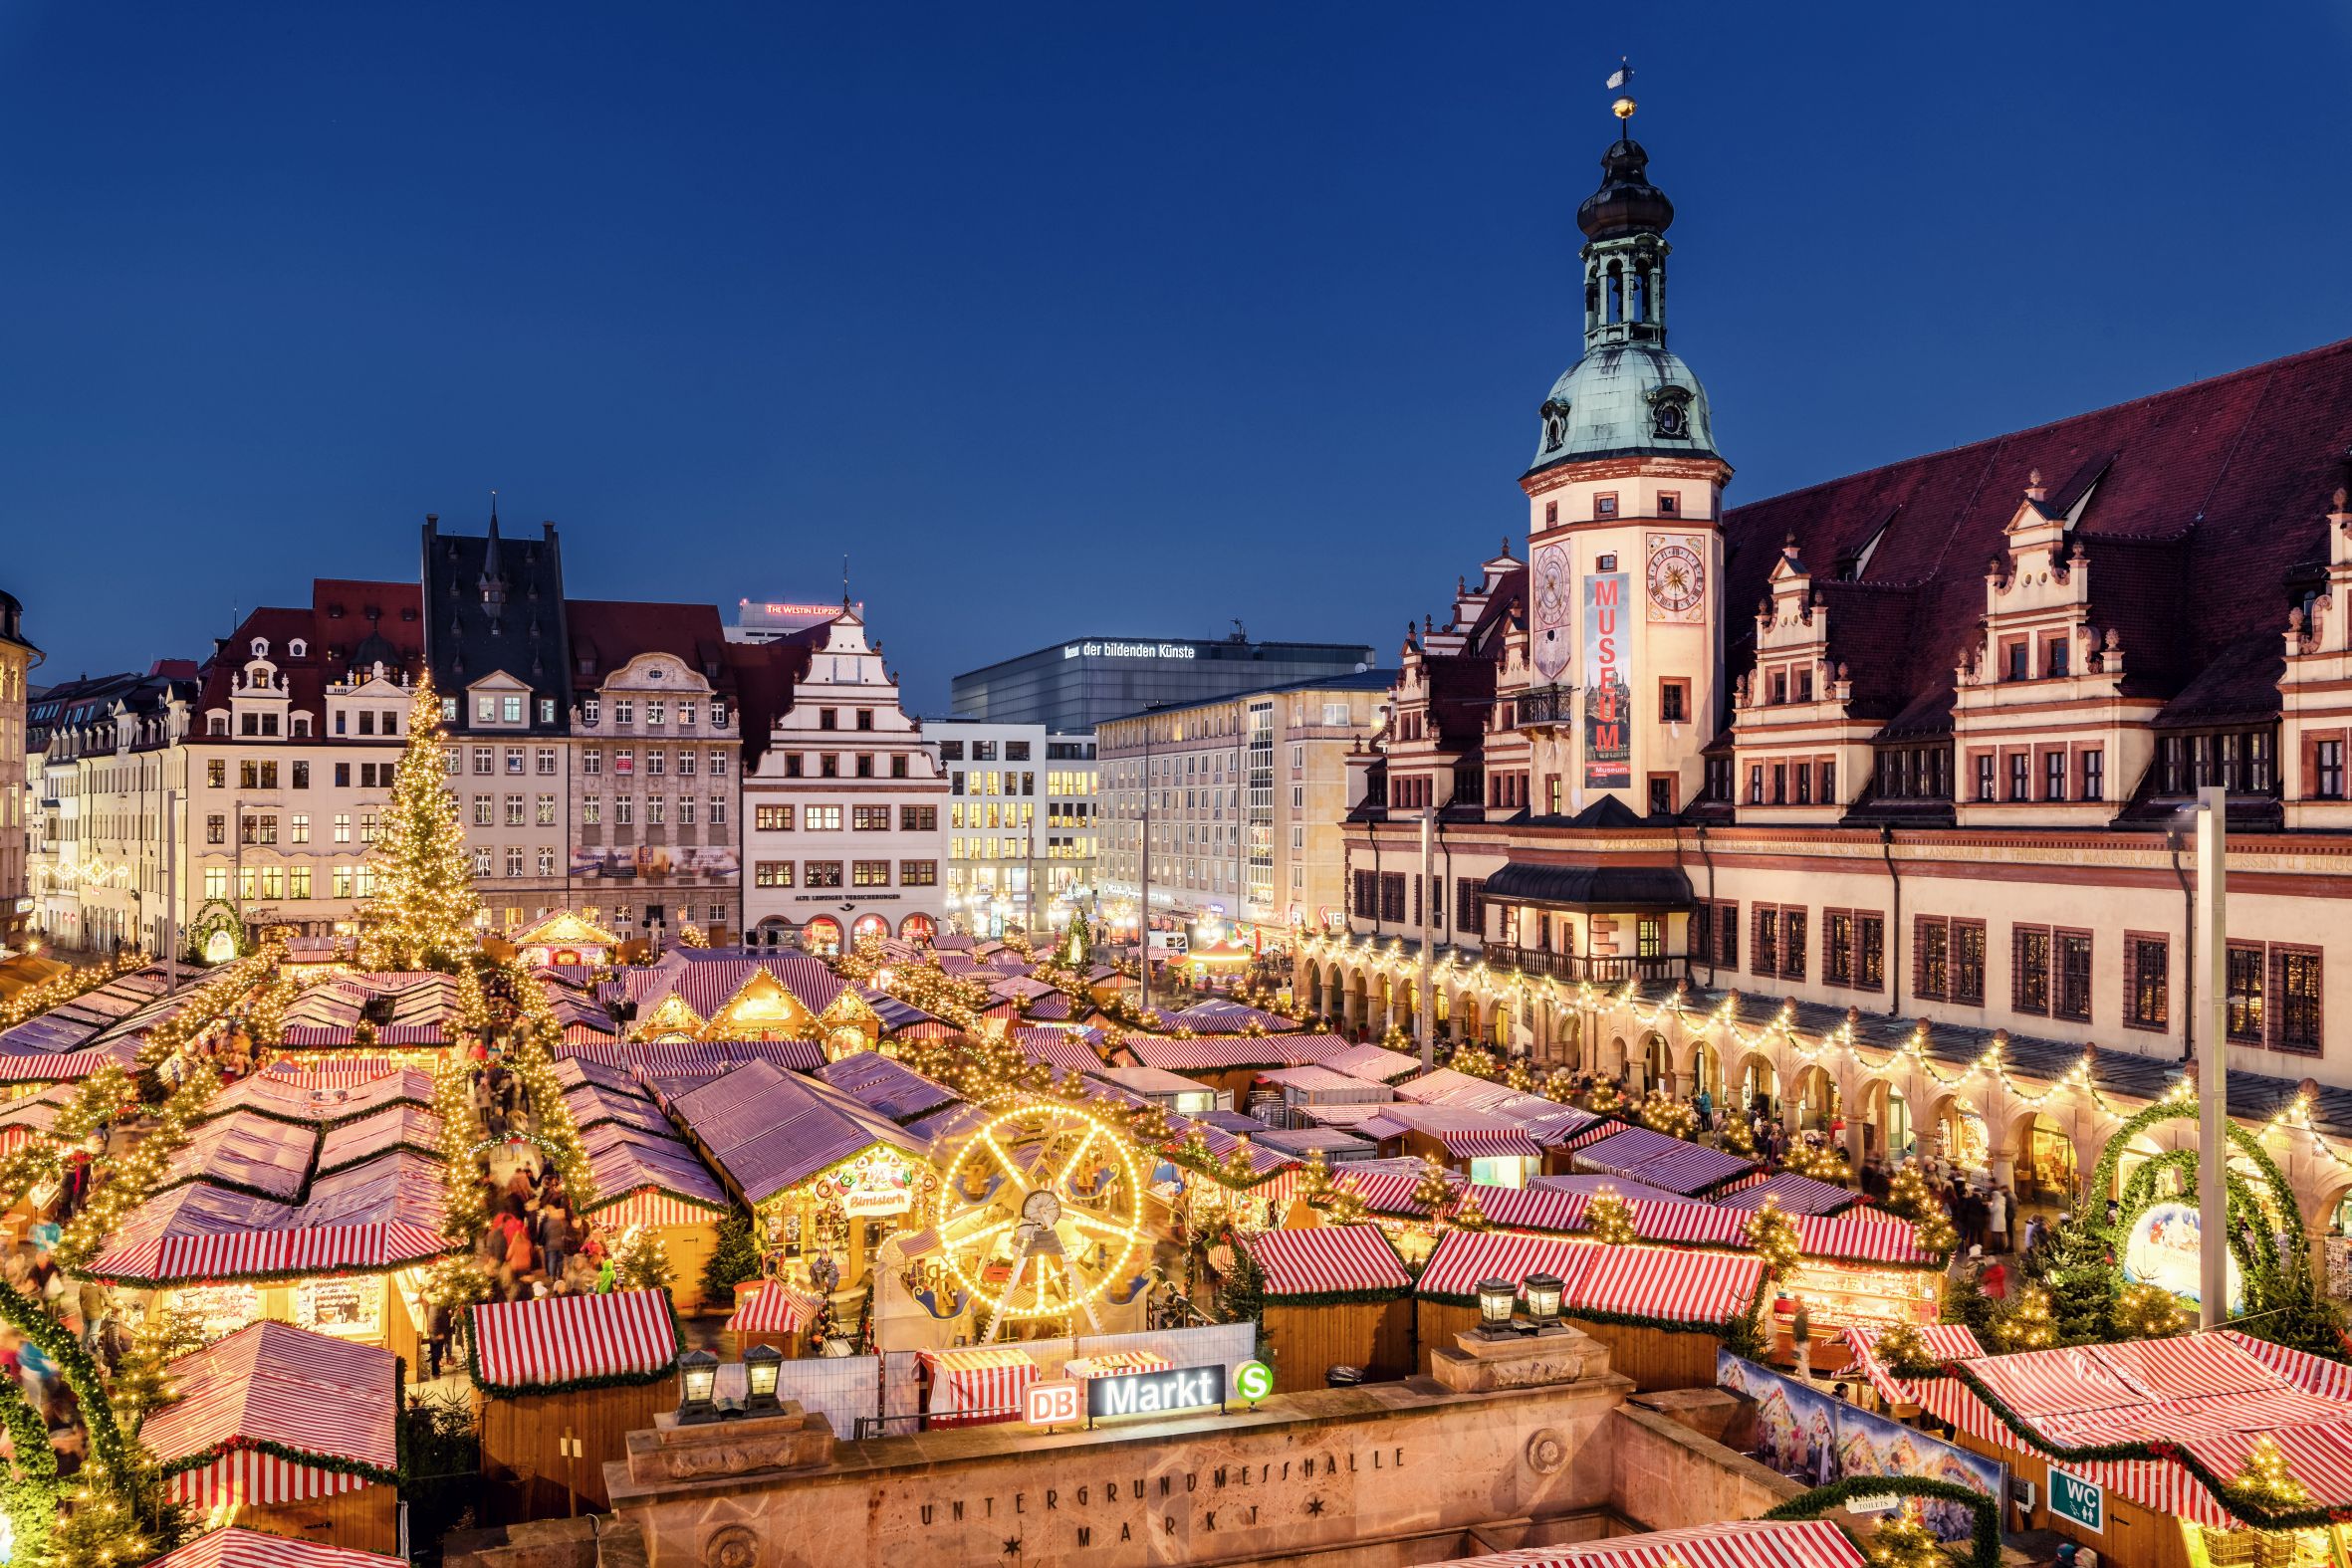   Posaunenchor und Knüppelkuchen | Die schönsten Leipziger Weihnachtsmärkte auf einen Blick  